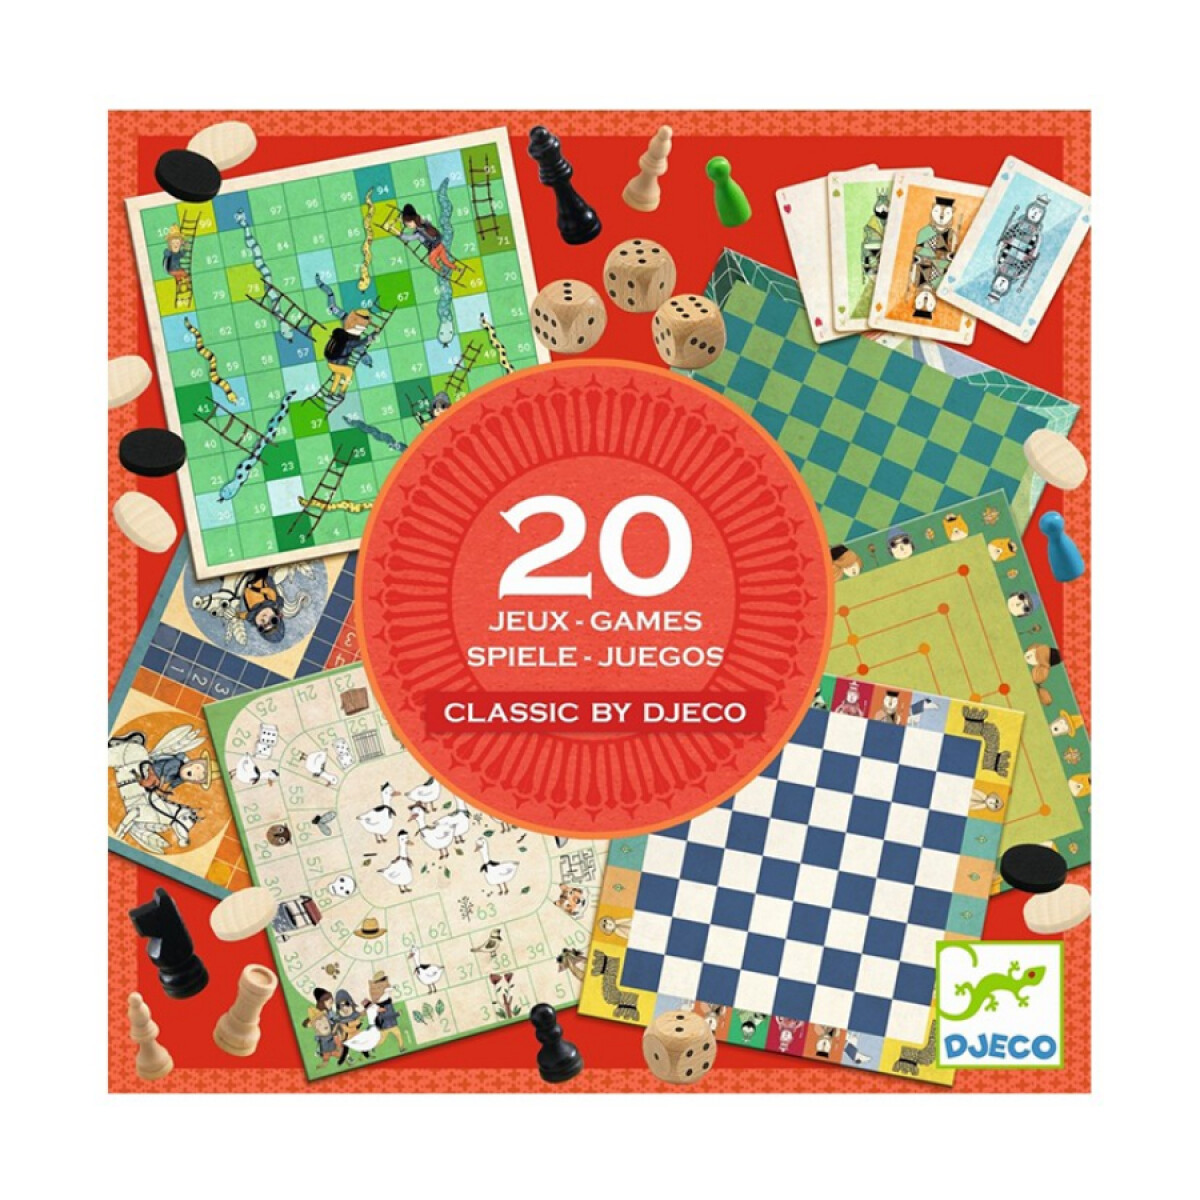 20 Juegos de Mesa Clásicos by Djeco 